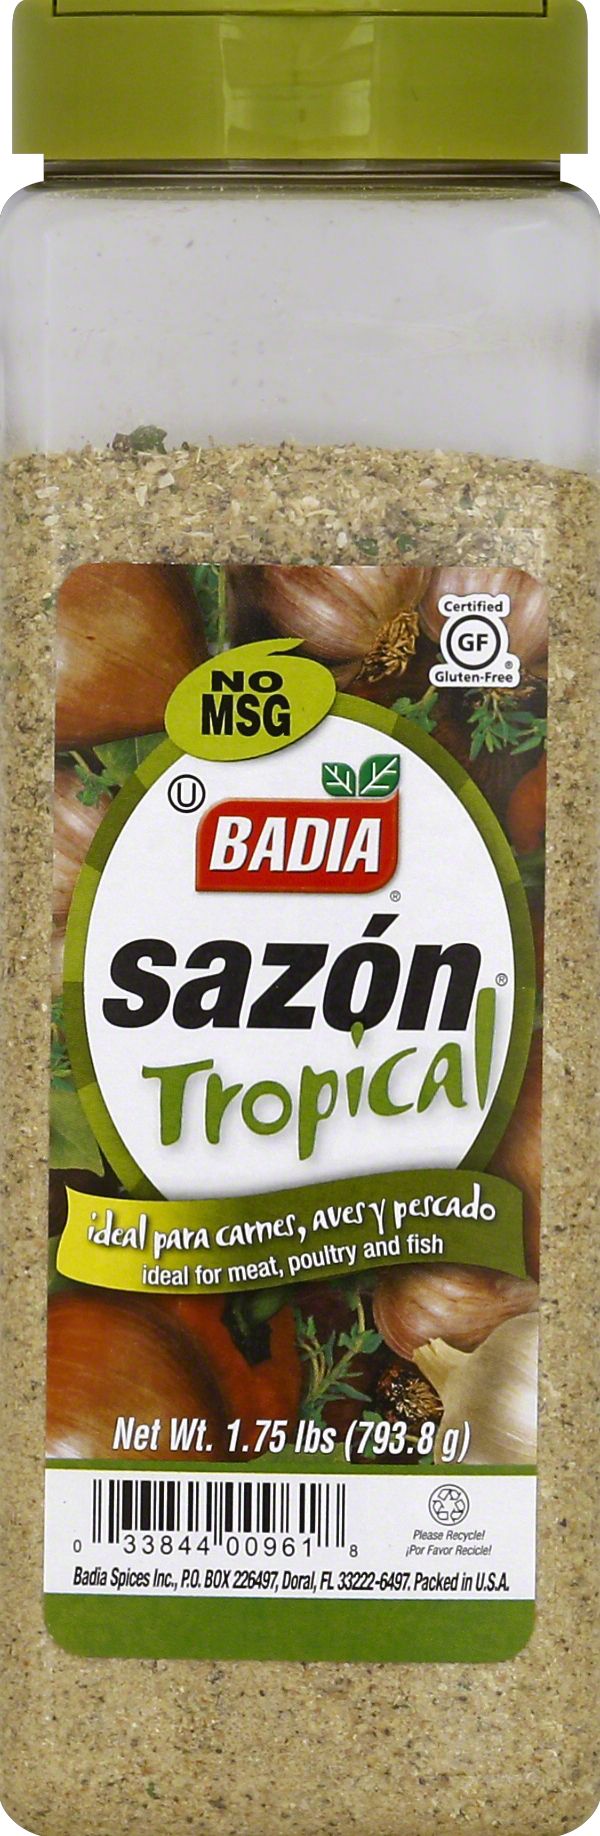 Badia Sazon Tropical Seasoning, 28 oz.